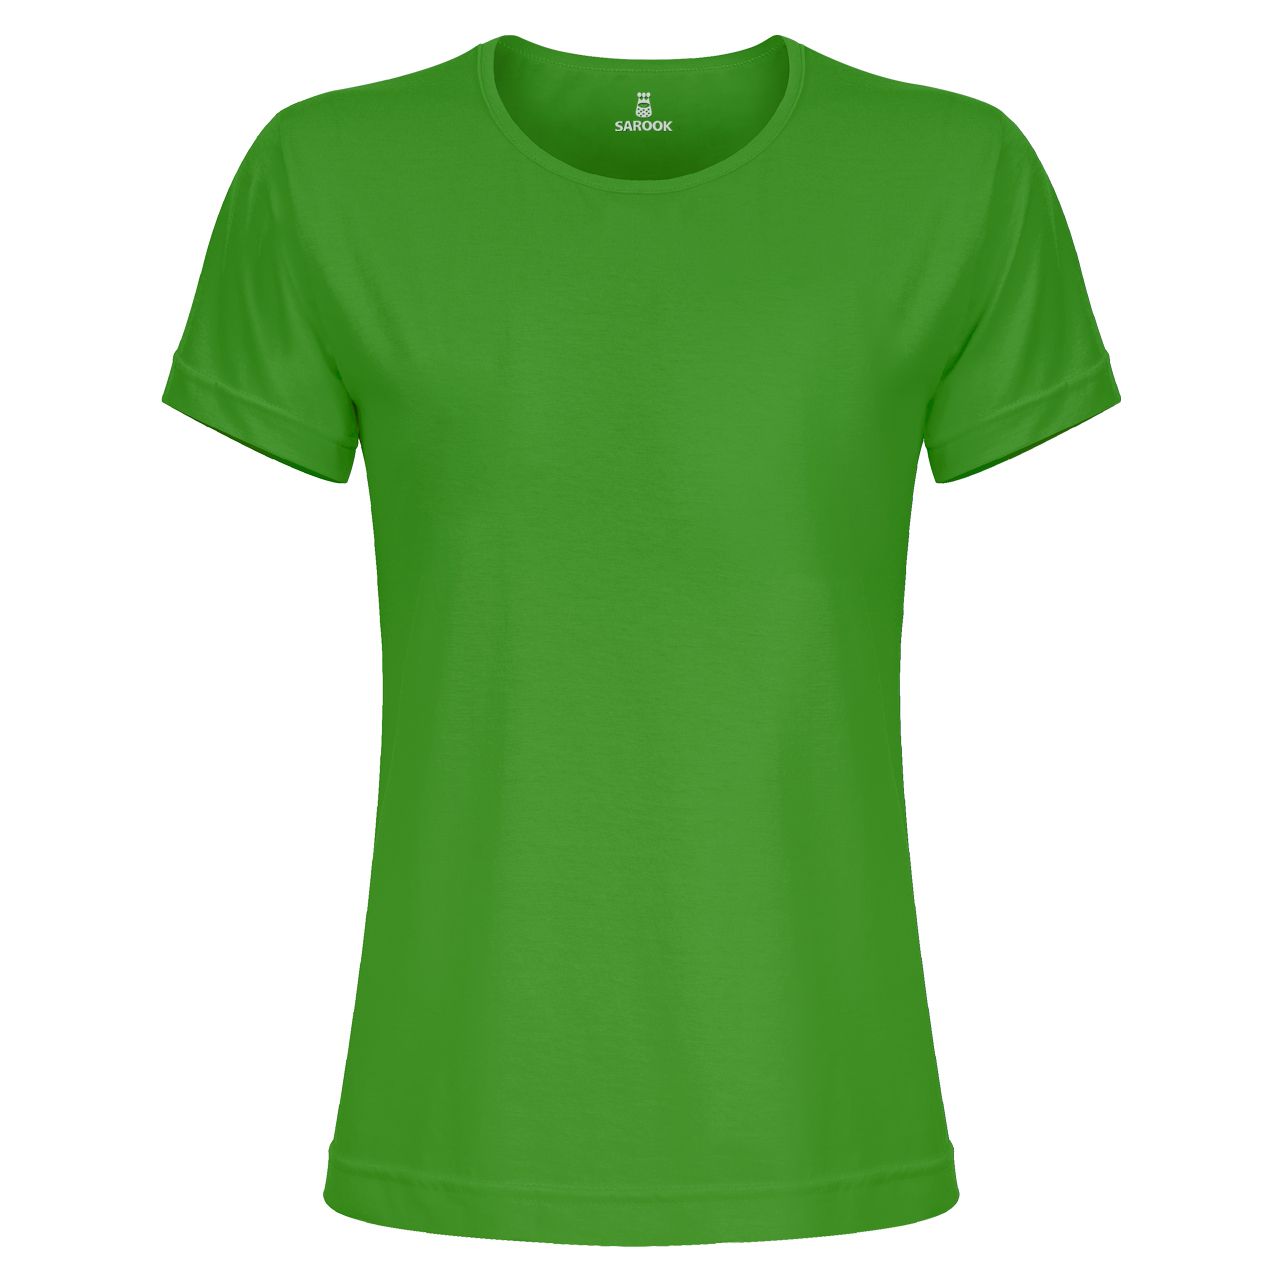 تی شرت آستین کوتاه زنانه ساروک مدل TSHPYR کد 10 رنگ سبز چمنی -  - 1